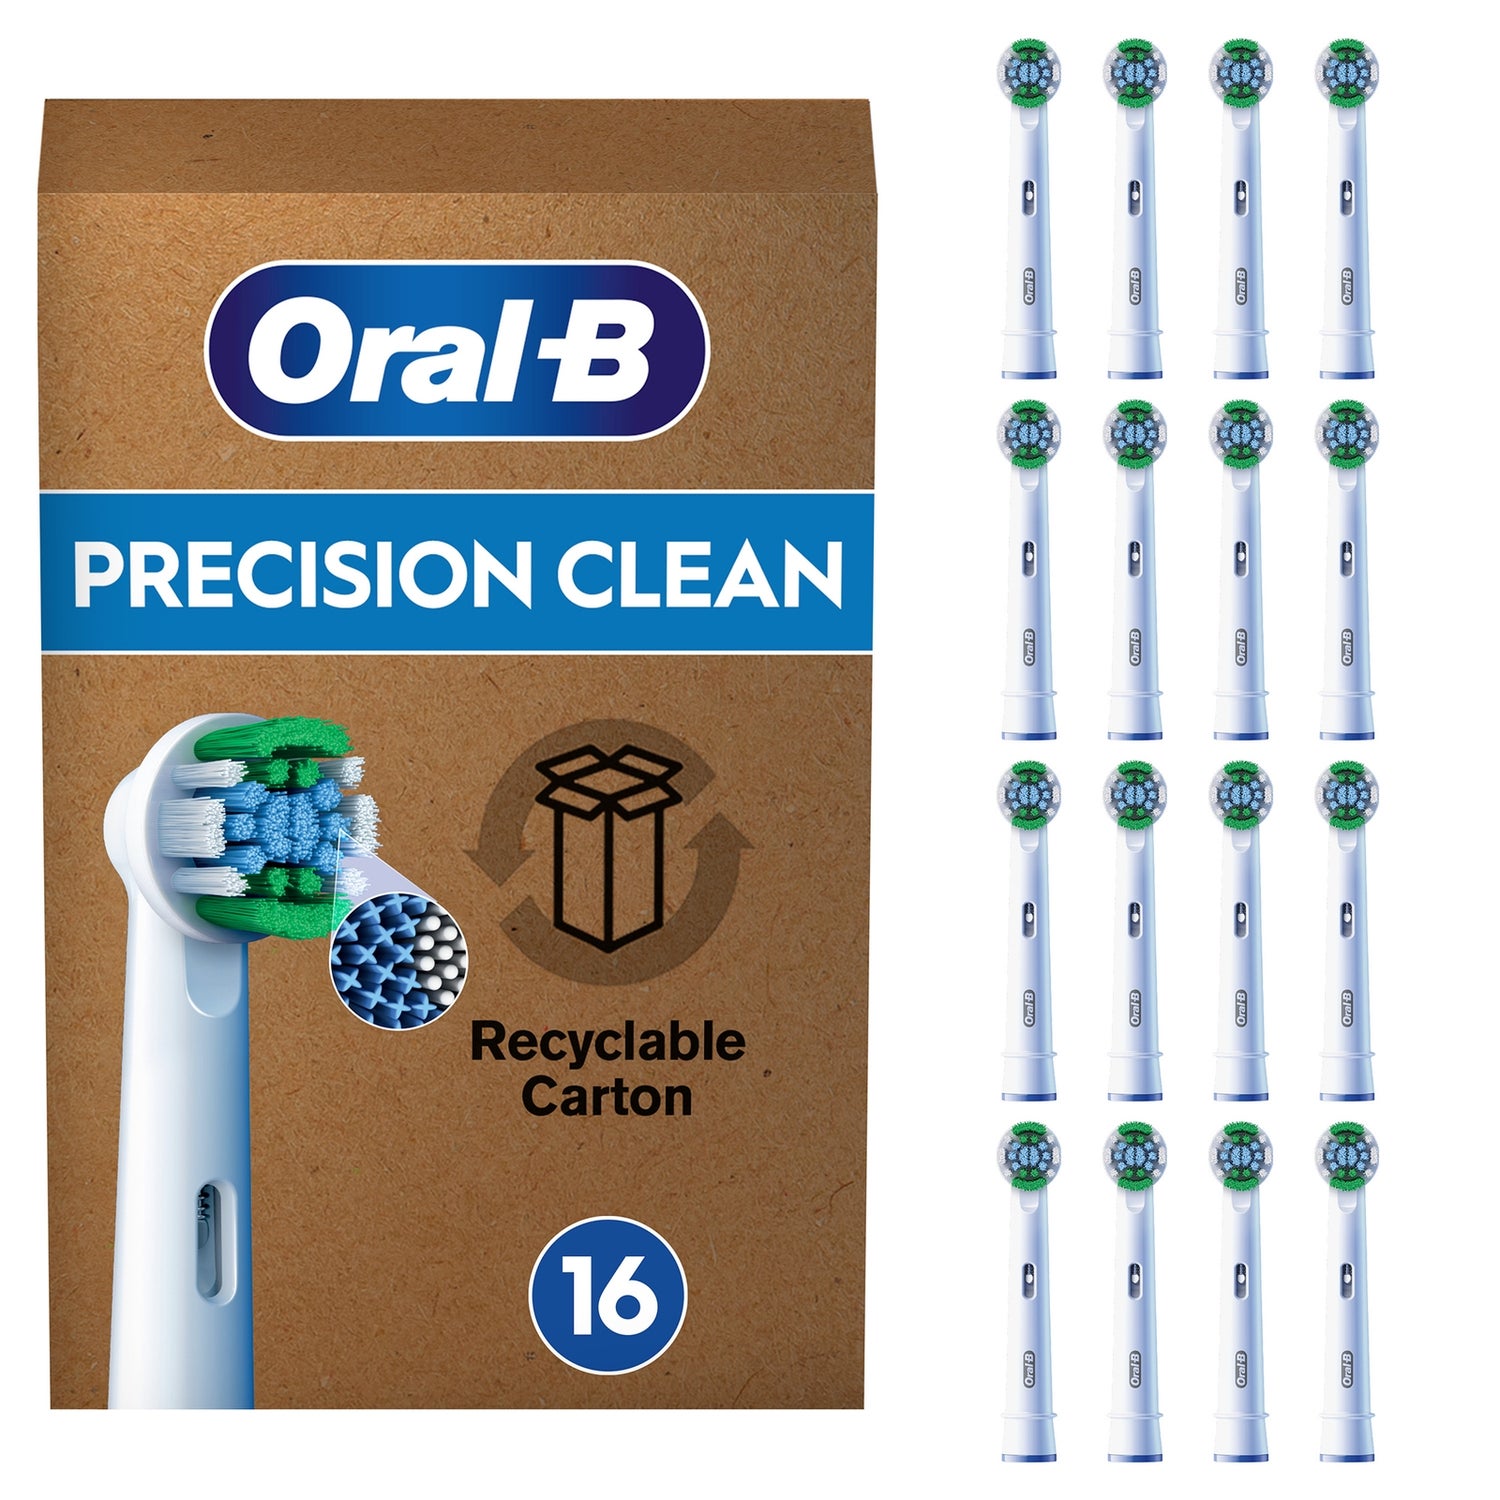 Borsten, Precision Zahnbürste, DE Clean elektrische briefkastenfähige X-förmige Pro | 16 für Oral-B Oral-B Verpackung, Stück Aufsteckbürsten